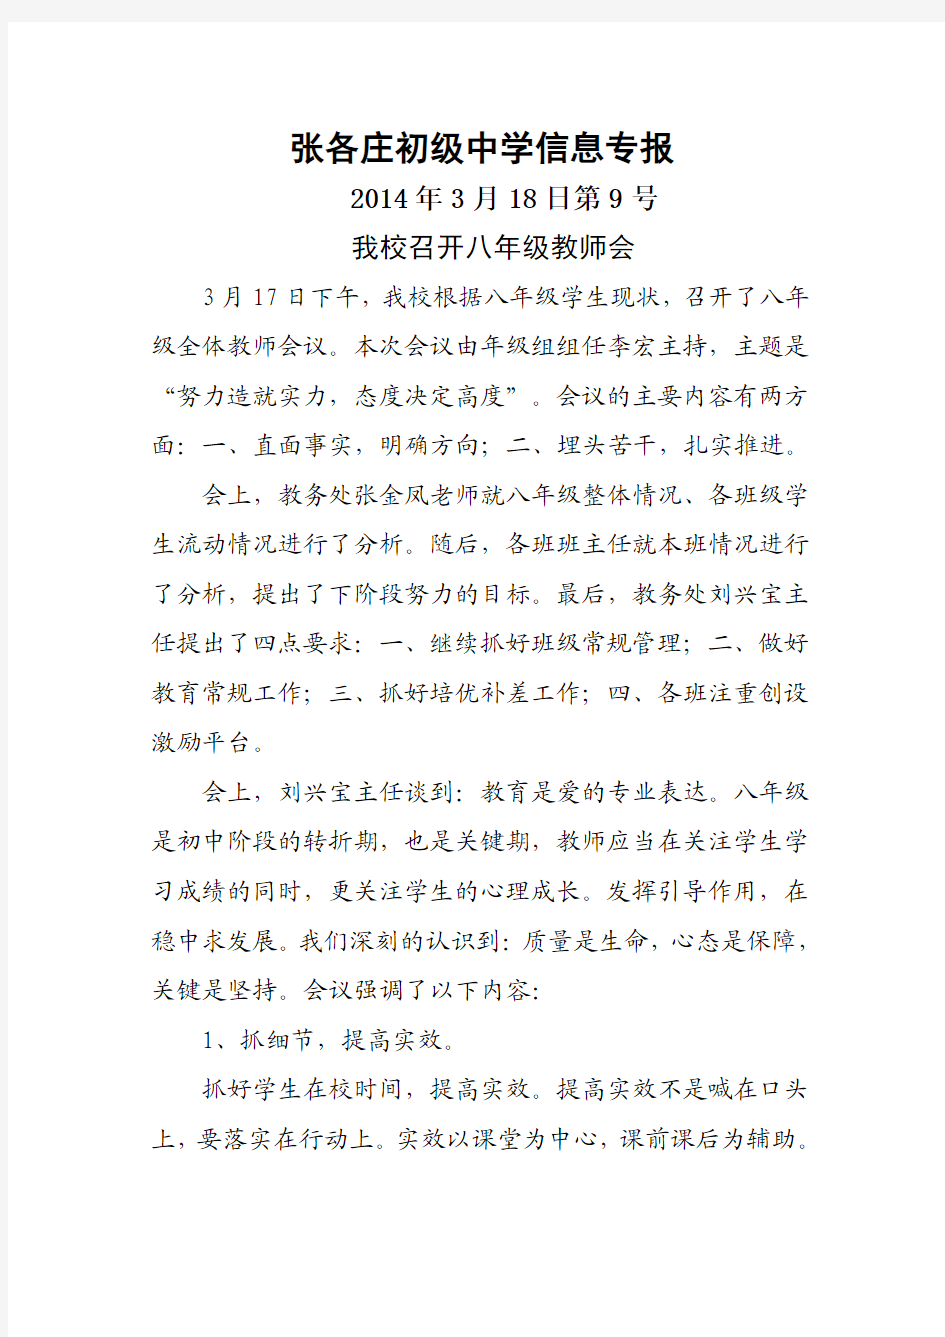 张各庄初级中学信息专报——我校召开八年级教师会(2014年3月18日第9号)